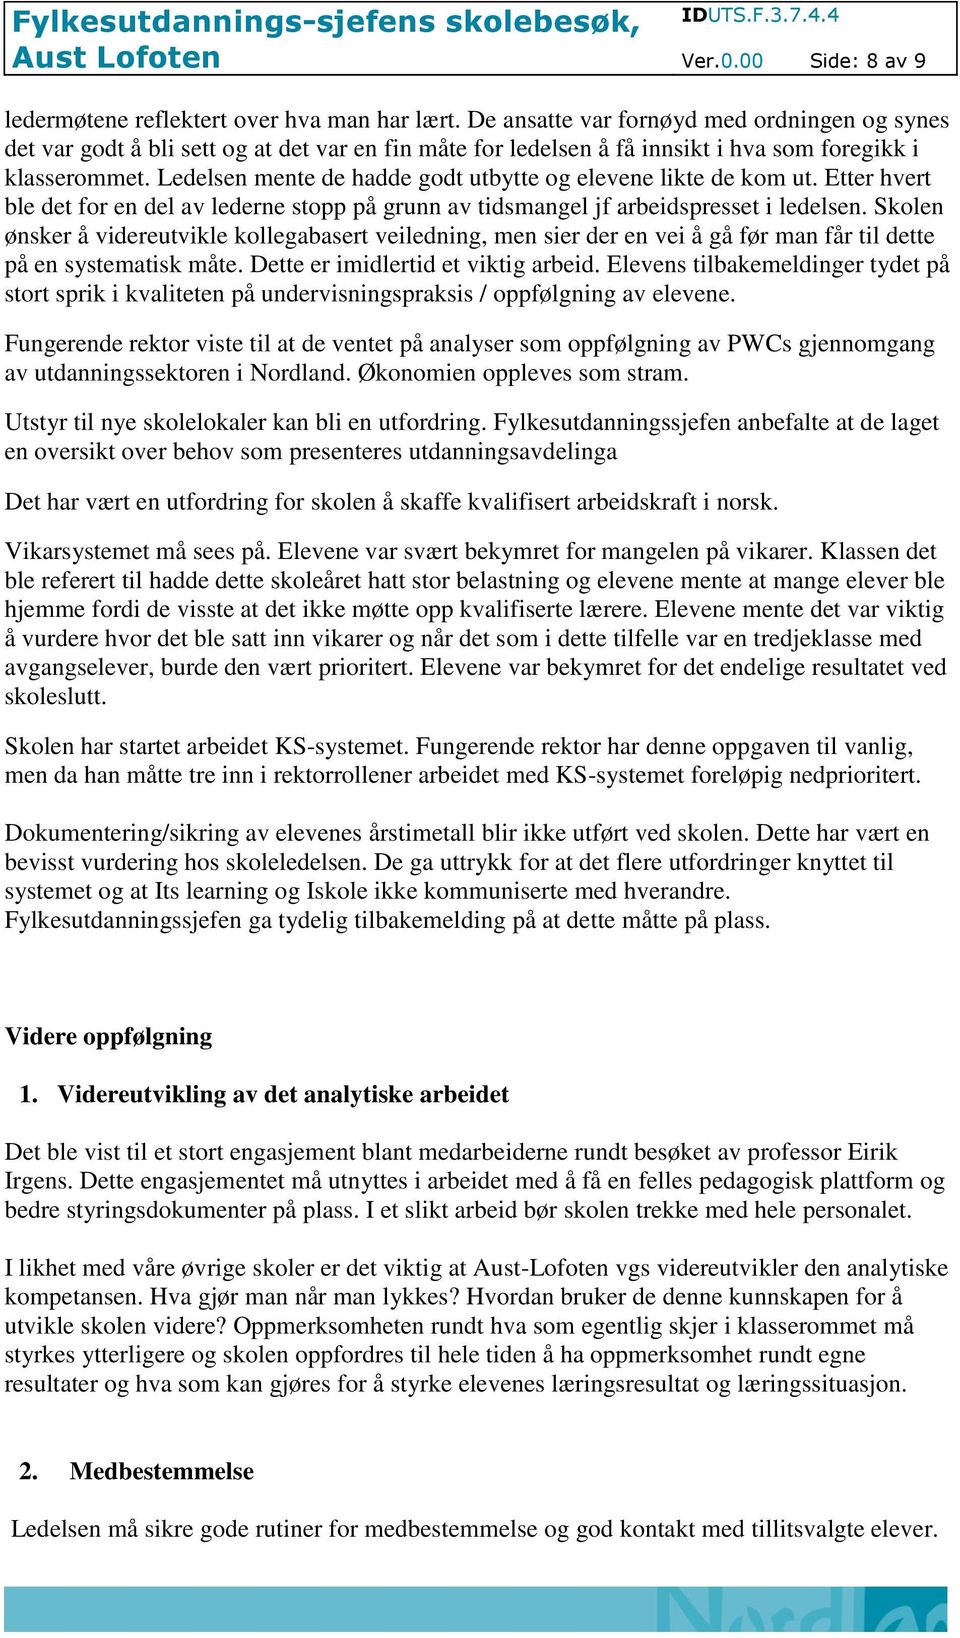 Aust Lofoten. Skole: Aust-Lofoten vgs Dato: - PDF Free Download